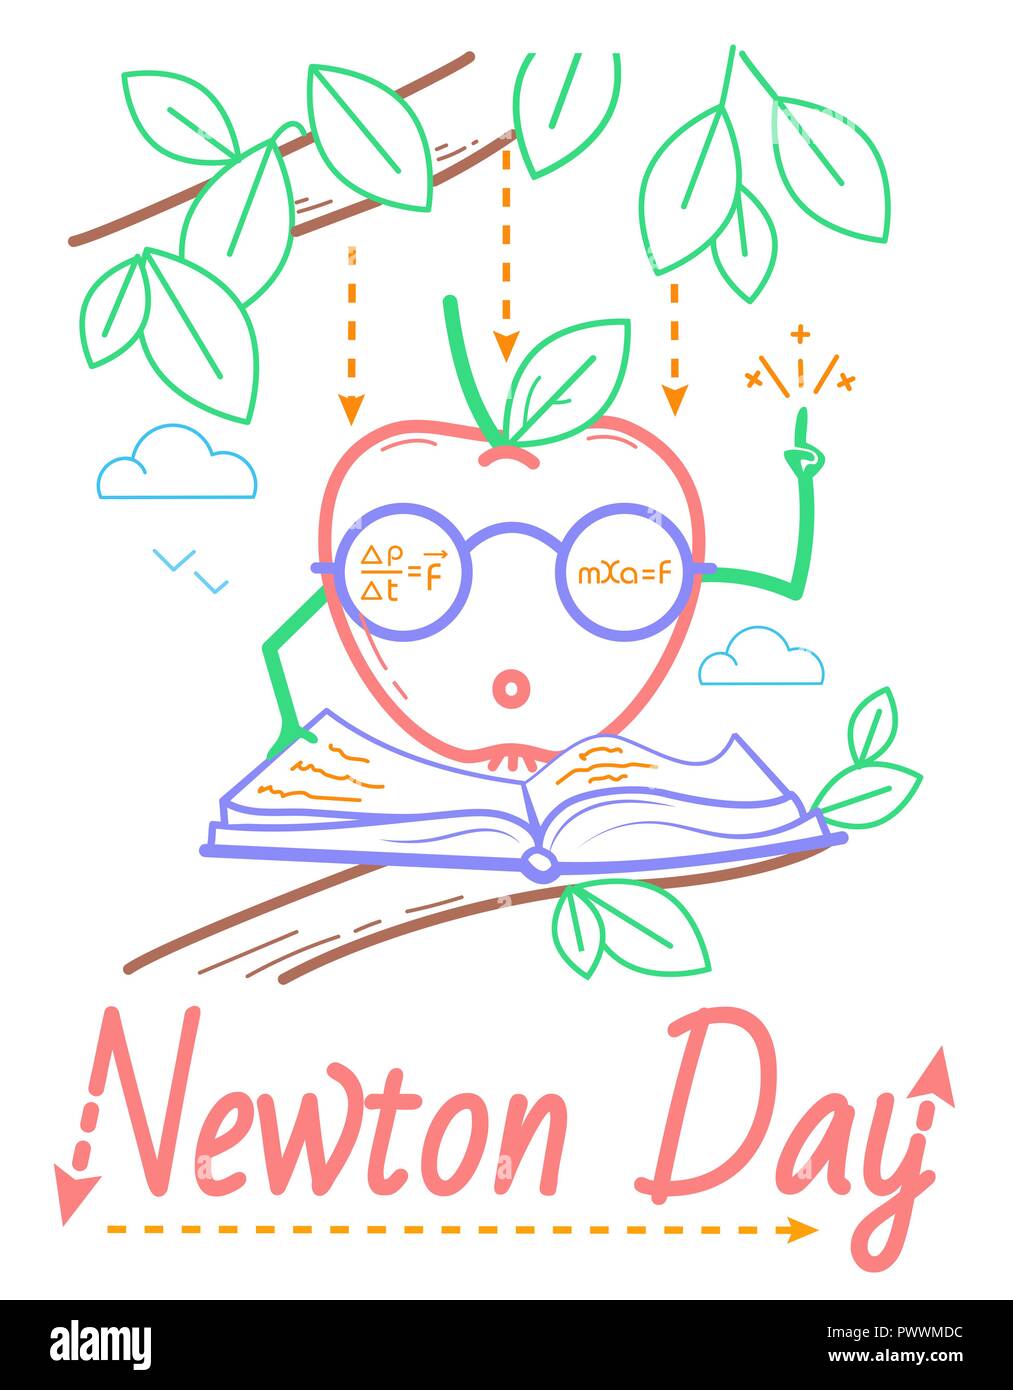 Título educativo para las vacaciones de Newton día. ilustración en el estilo lineal Ilustración del Vector